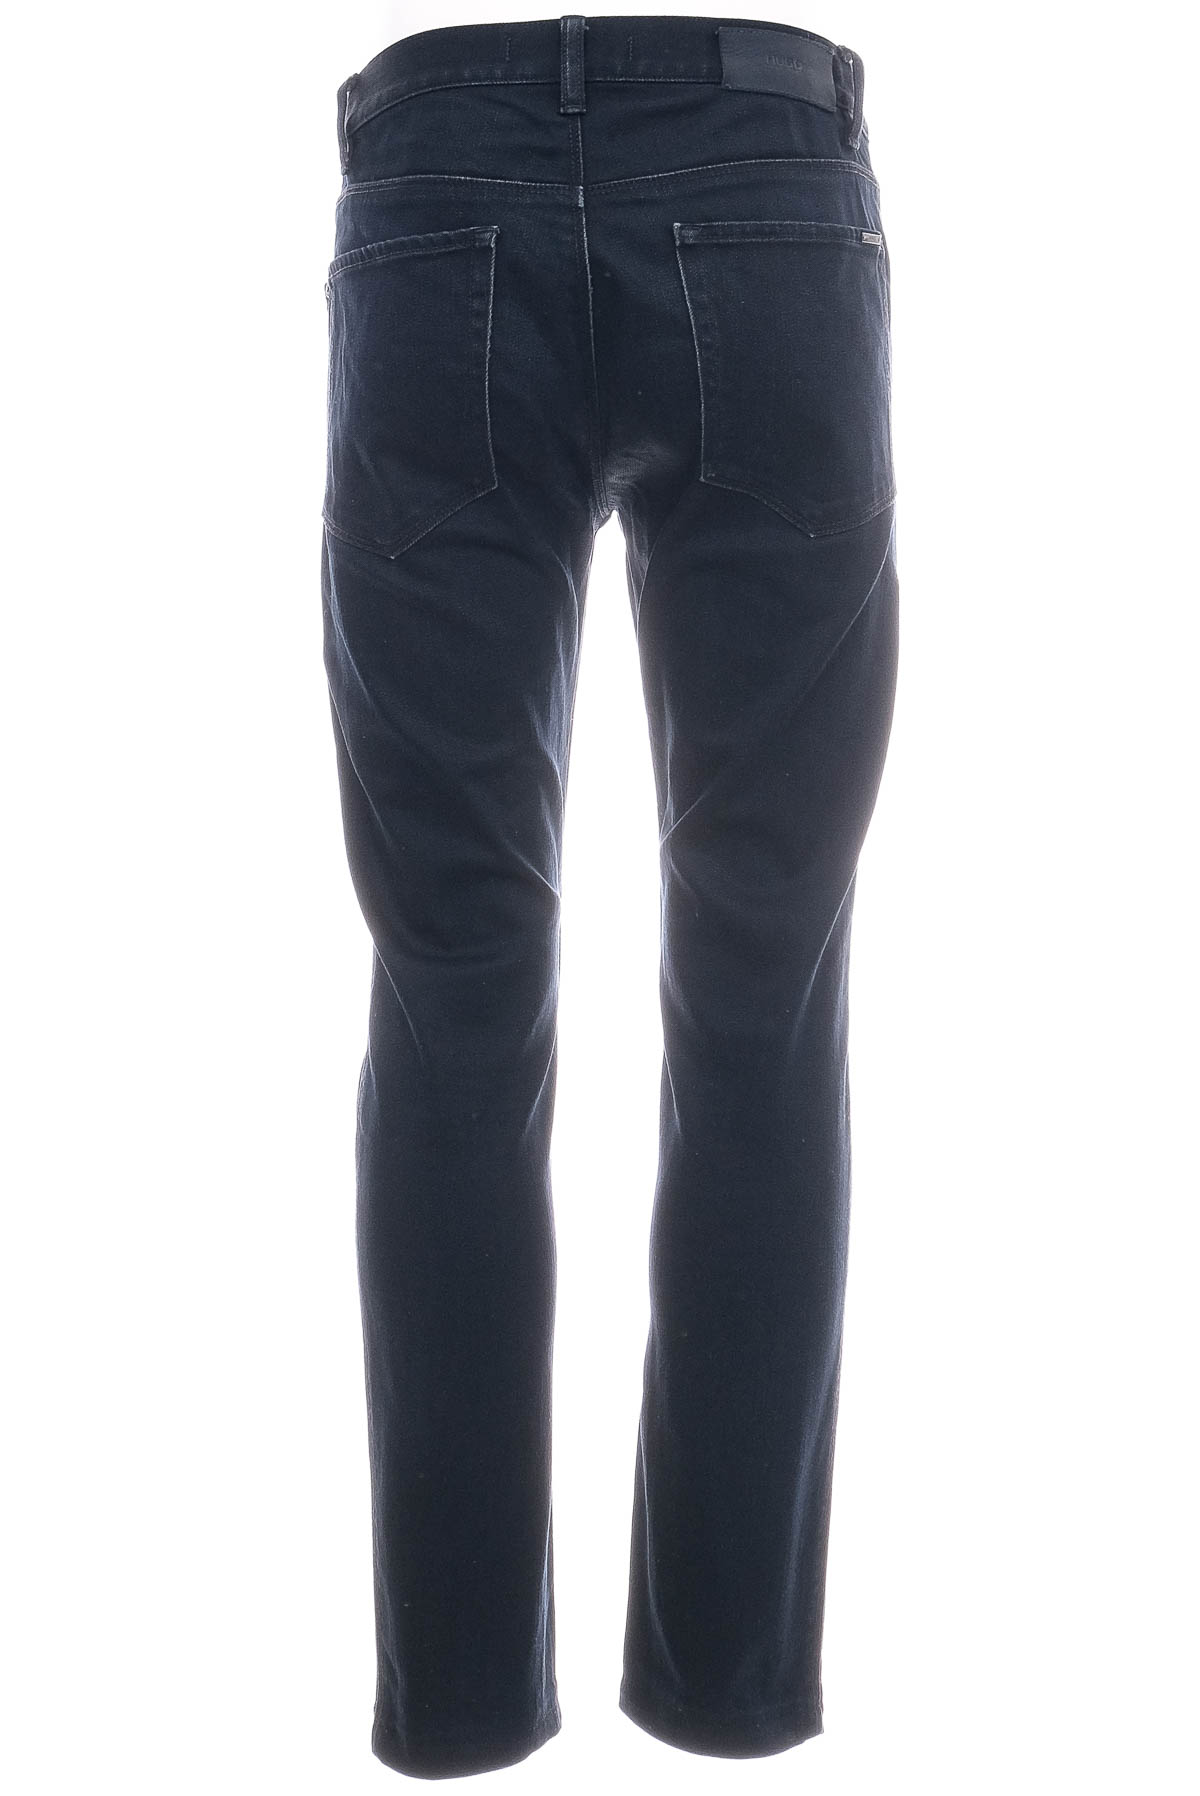 Jeans pentru bărbăți - HUGO BOSS - 1